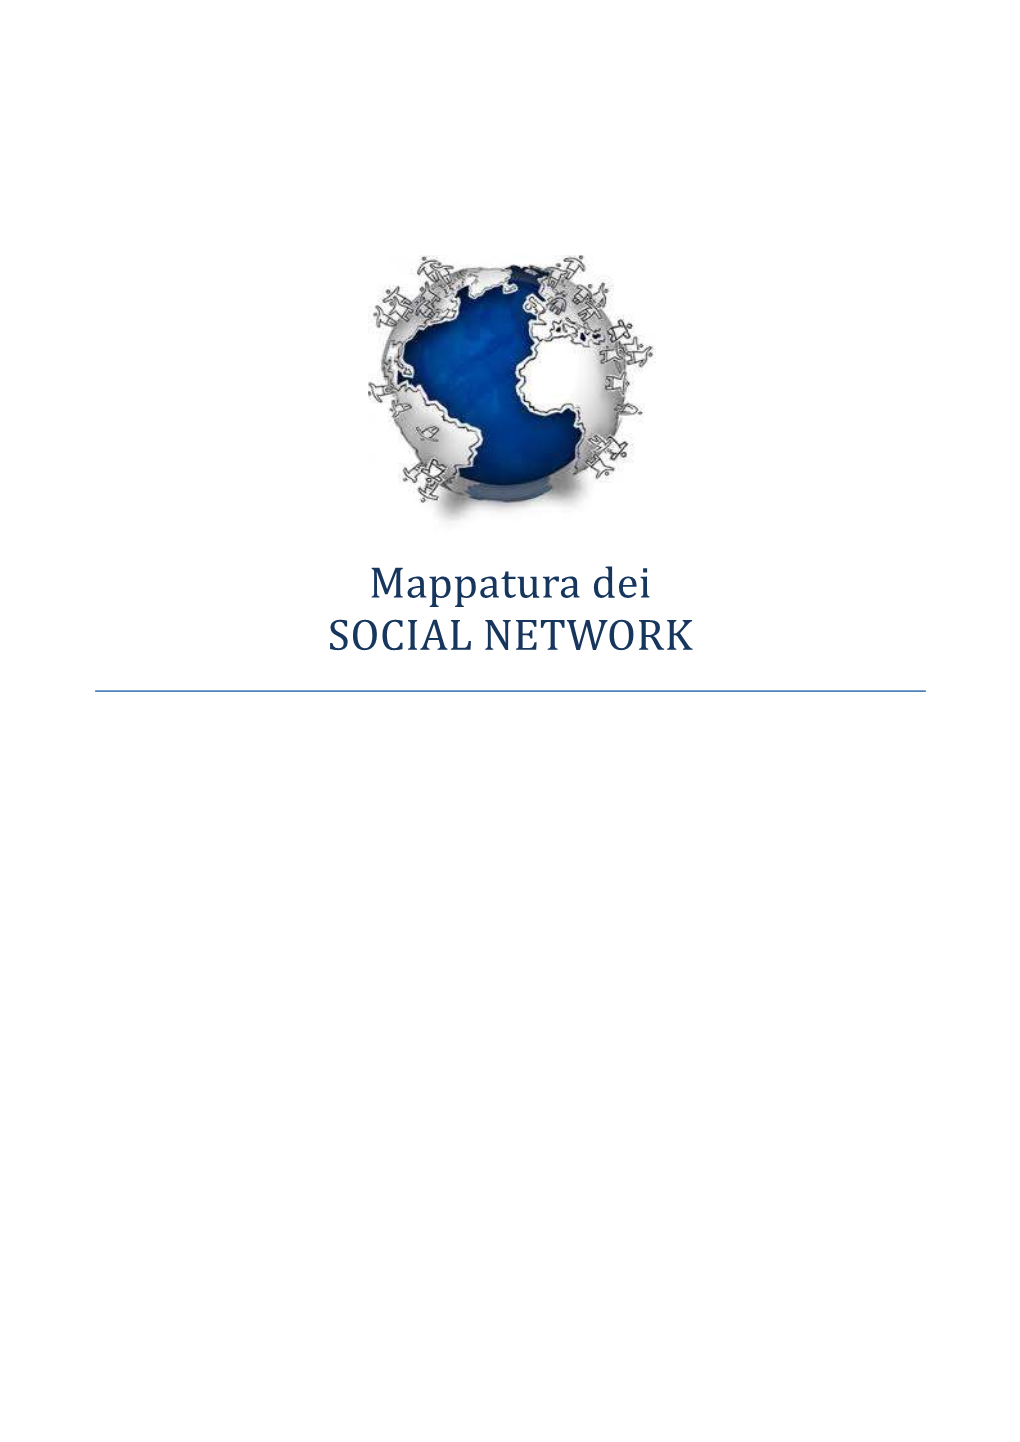 Mappatura Dei SOCIAL NETWORK